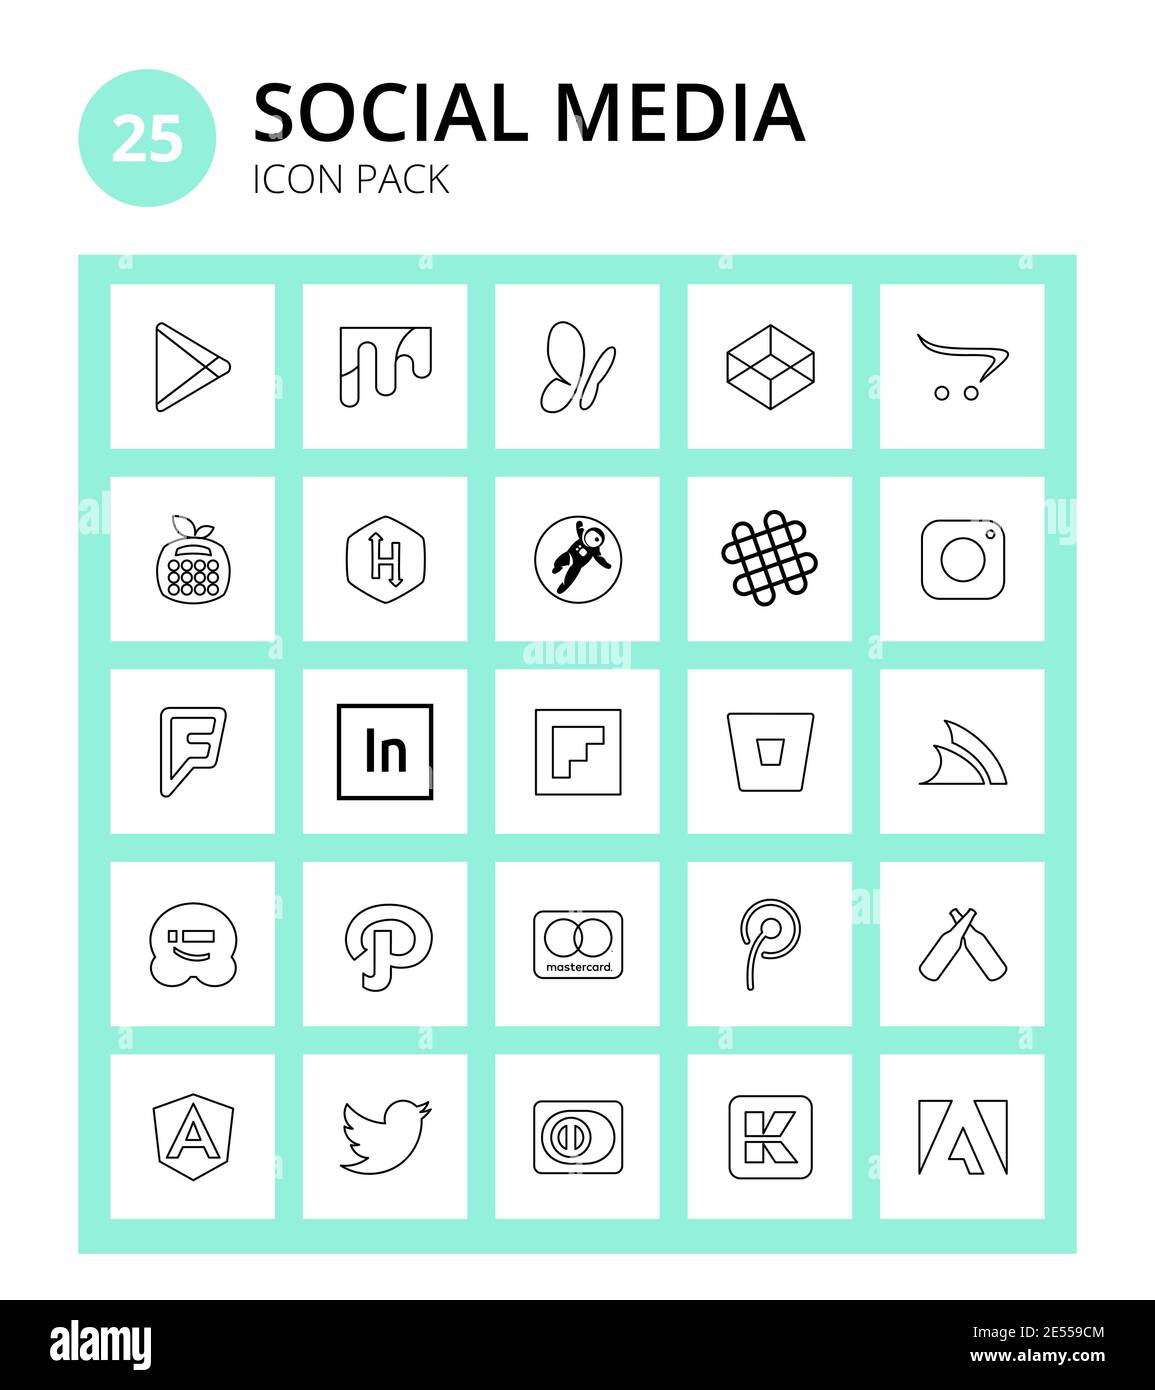 25 Vektor editierbares Logo Symbole von servicestack, flipboard, grav, adobe, Foursquare editierbare Vektor-Design-Elemente Stock Vektor